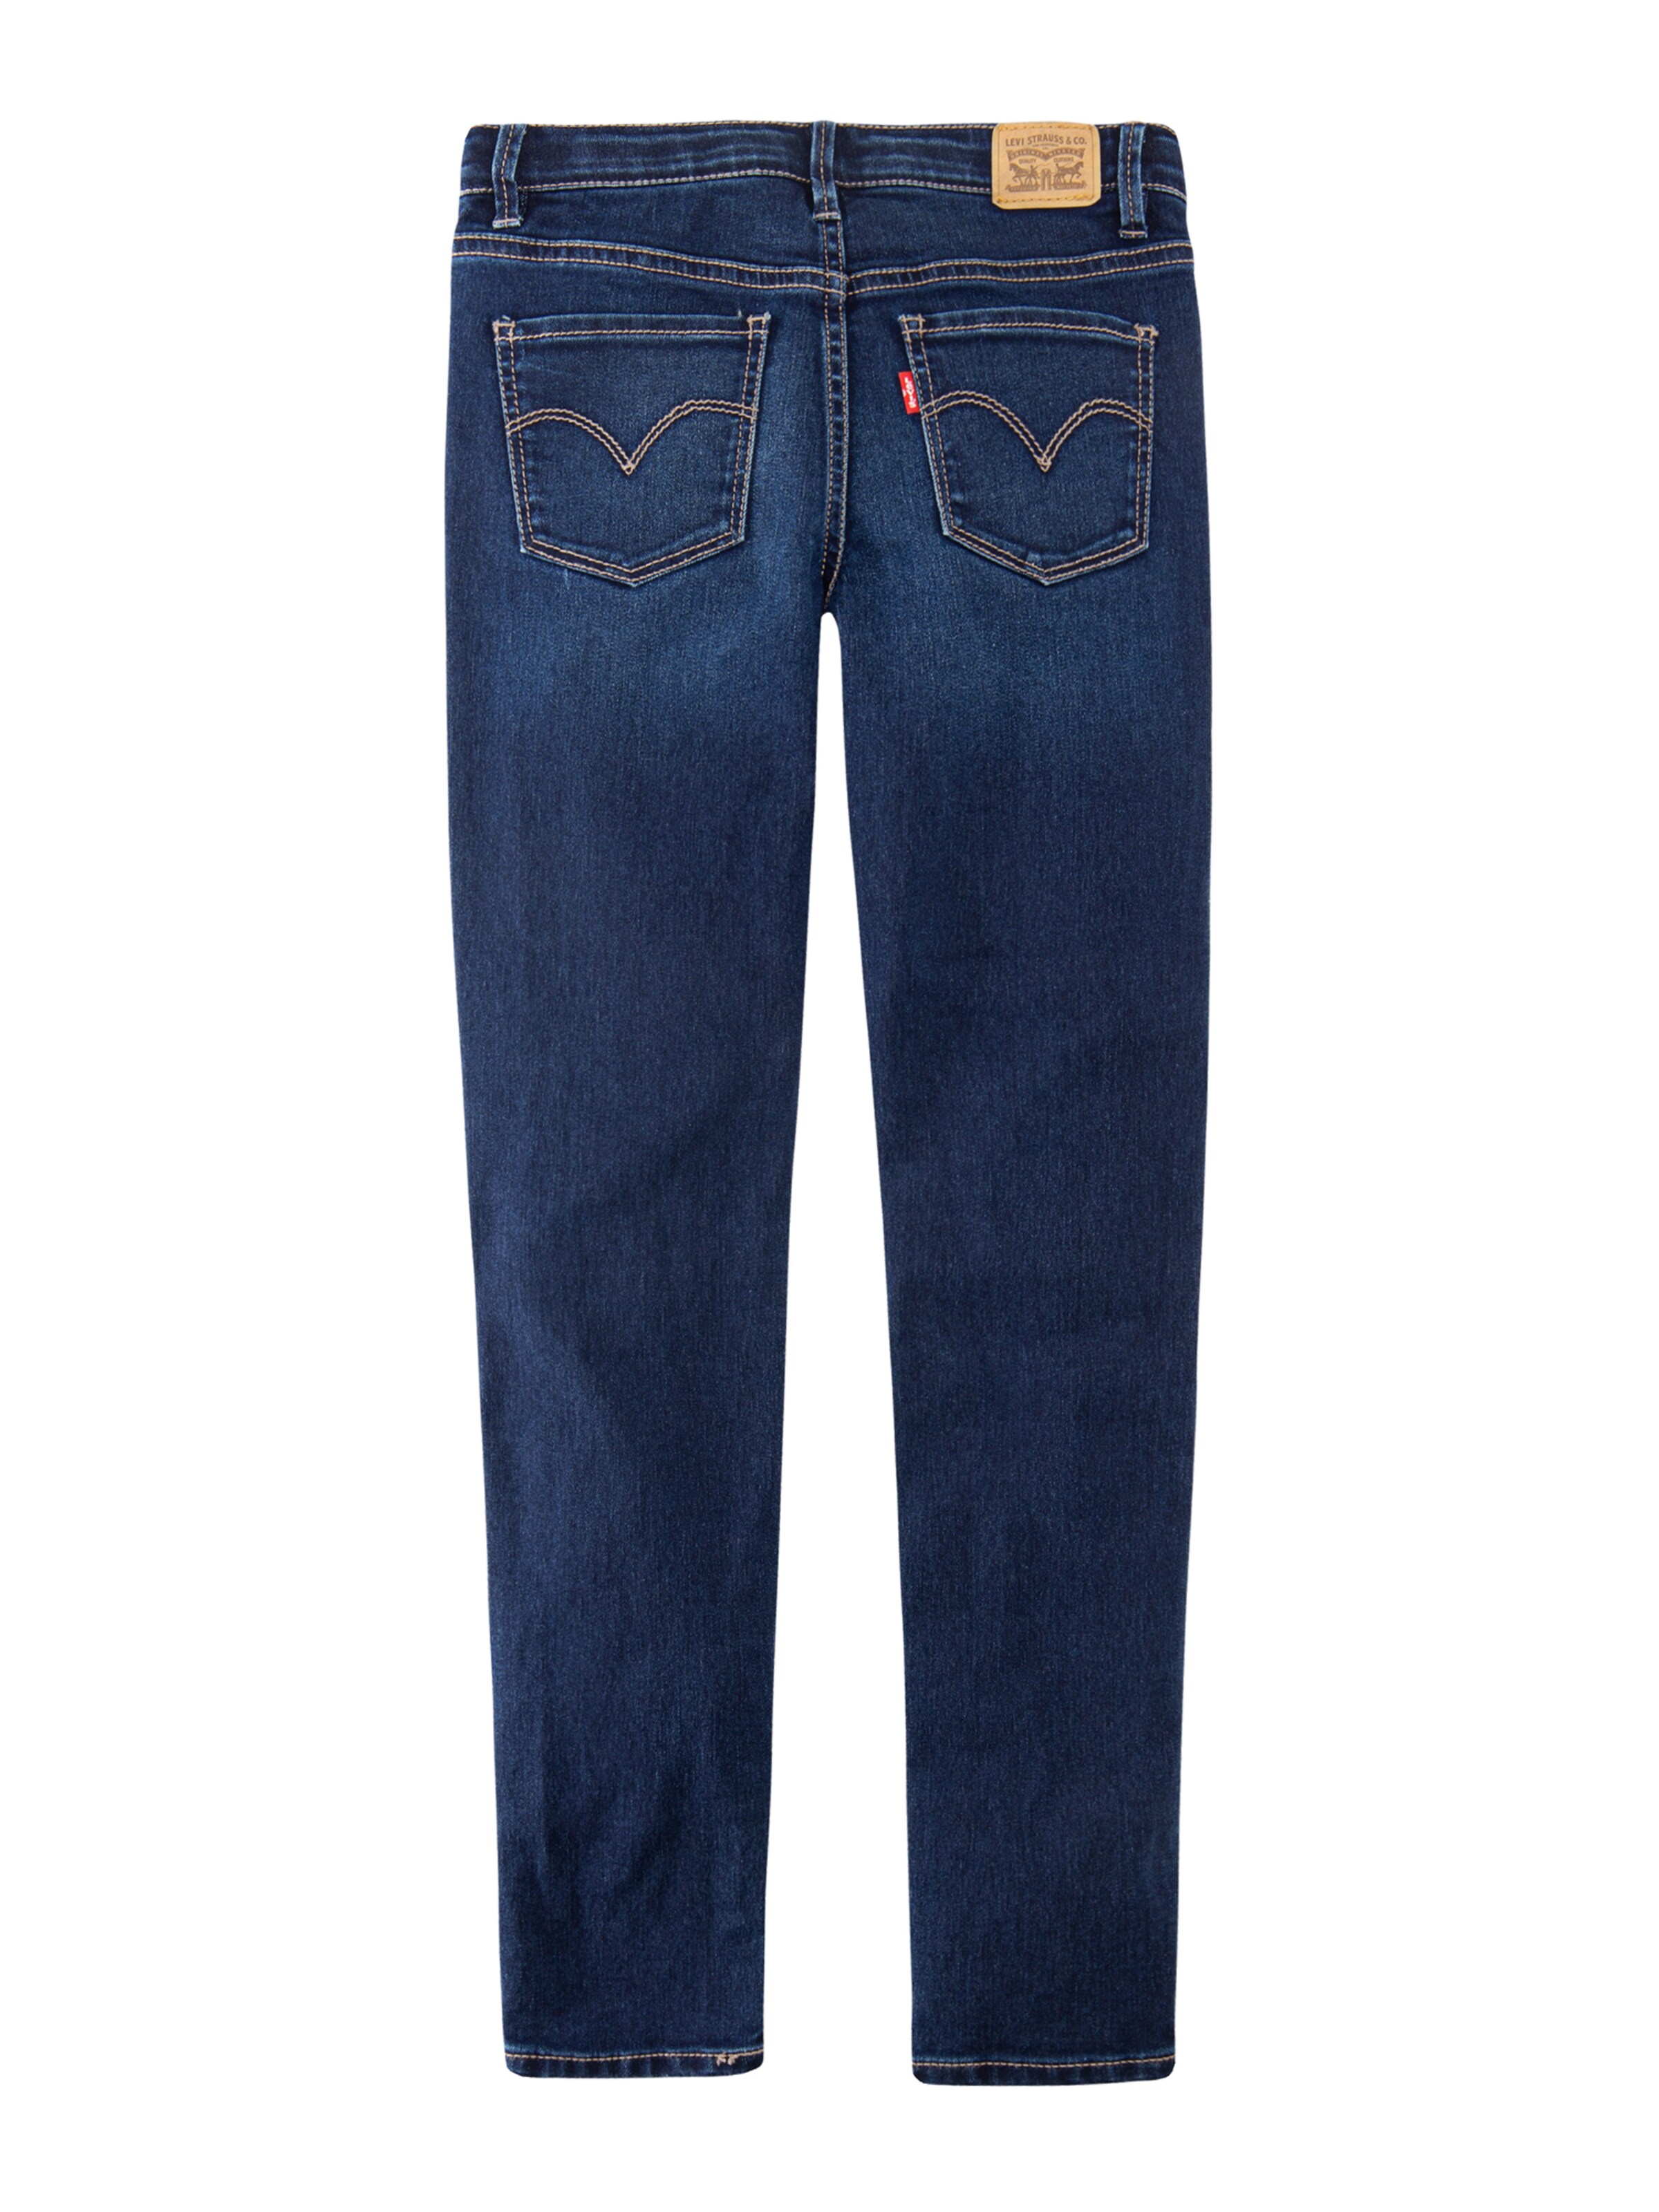 levi's jeans 710